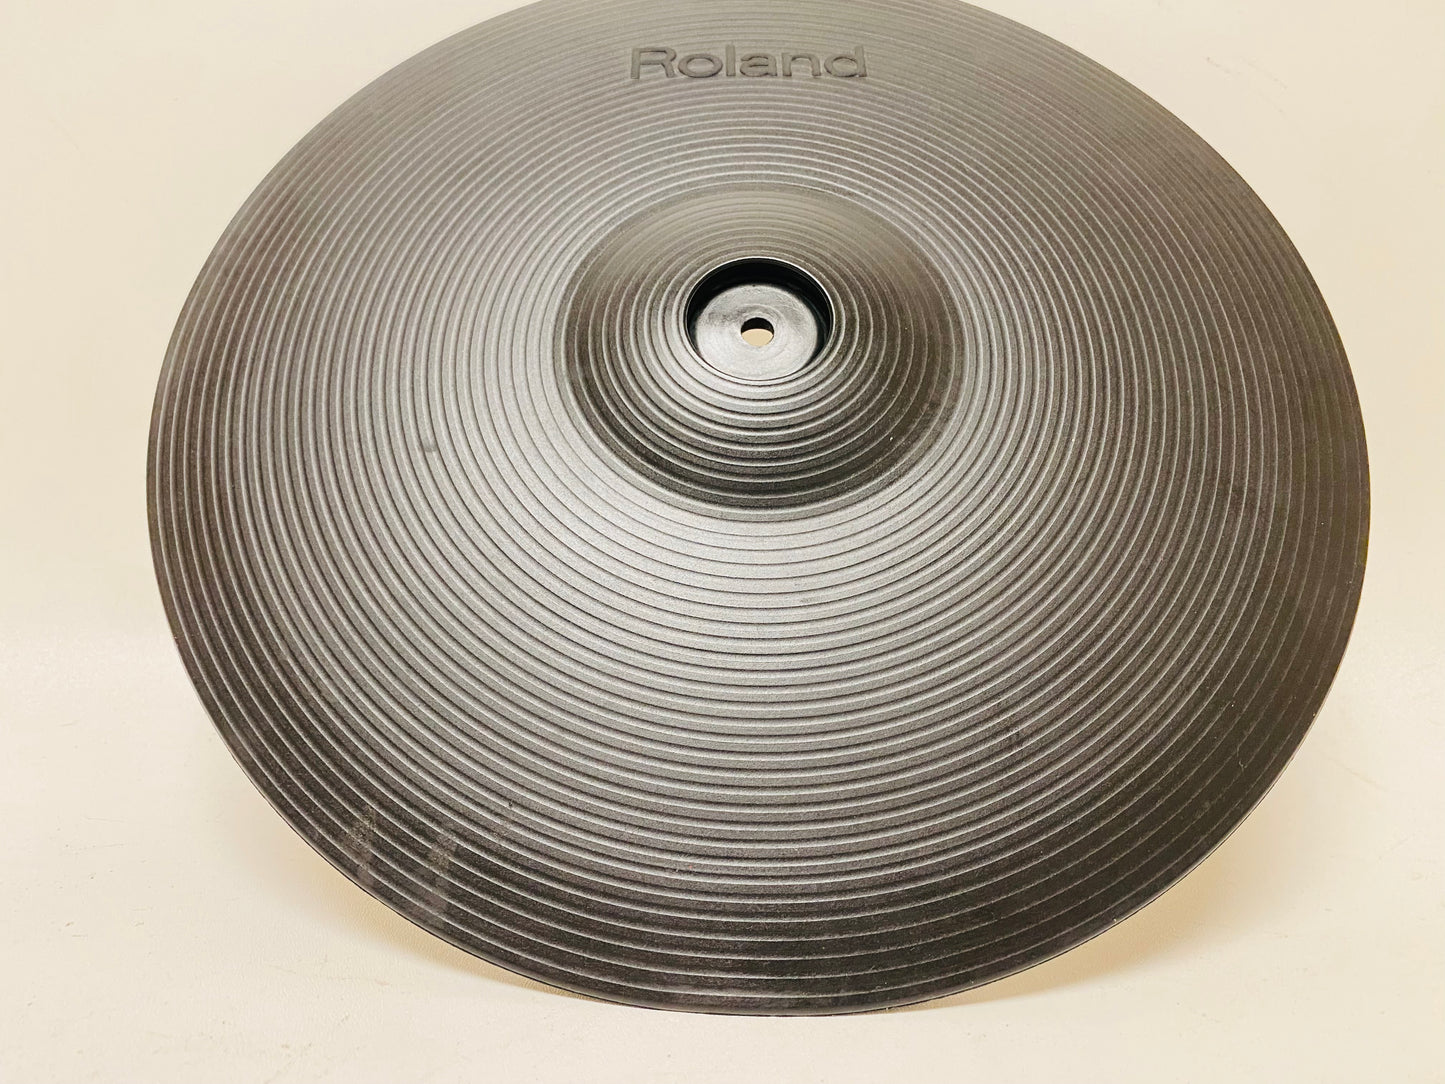 Roland CY-14C 14” Crash Cymbal CY14